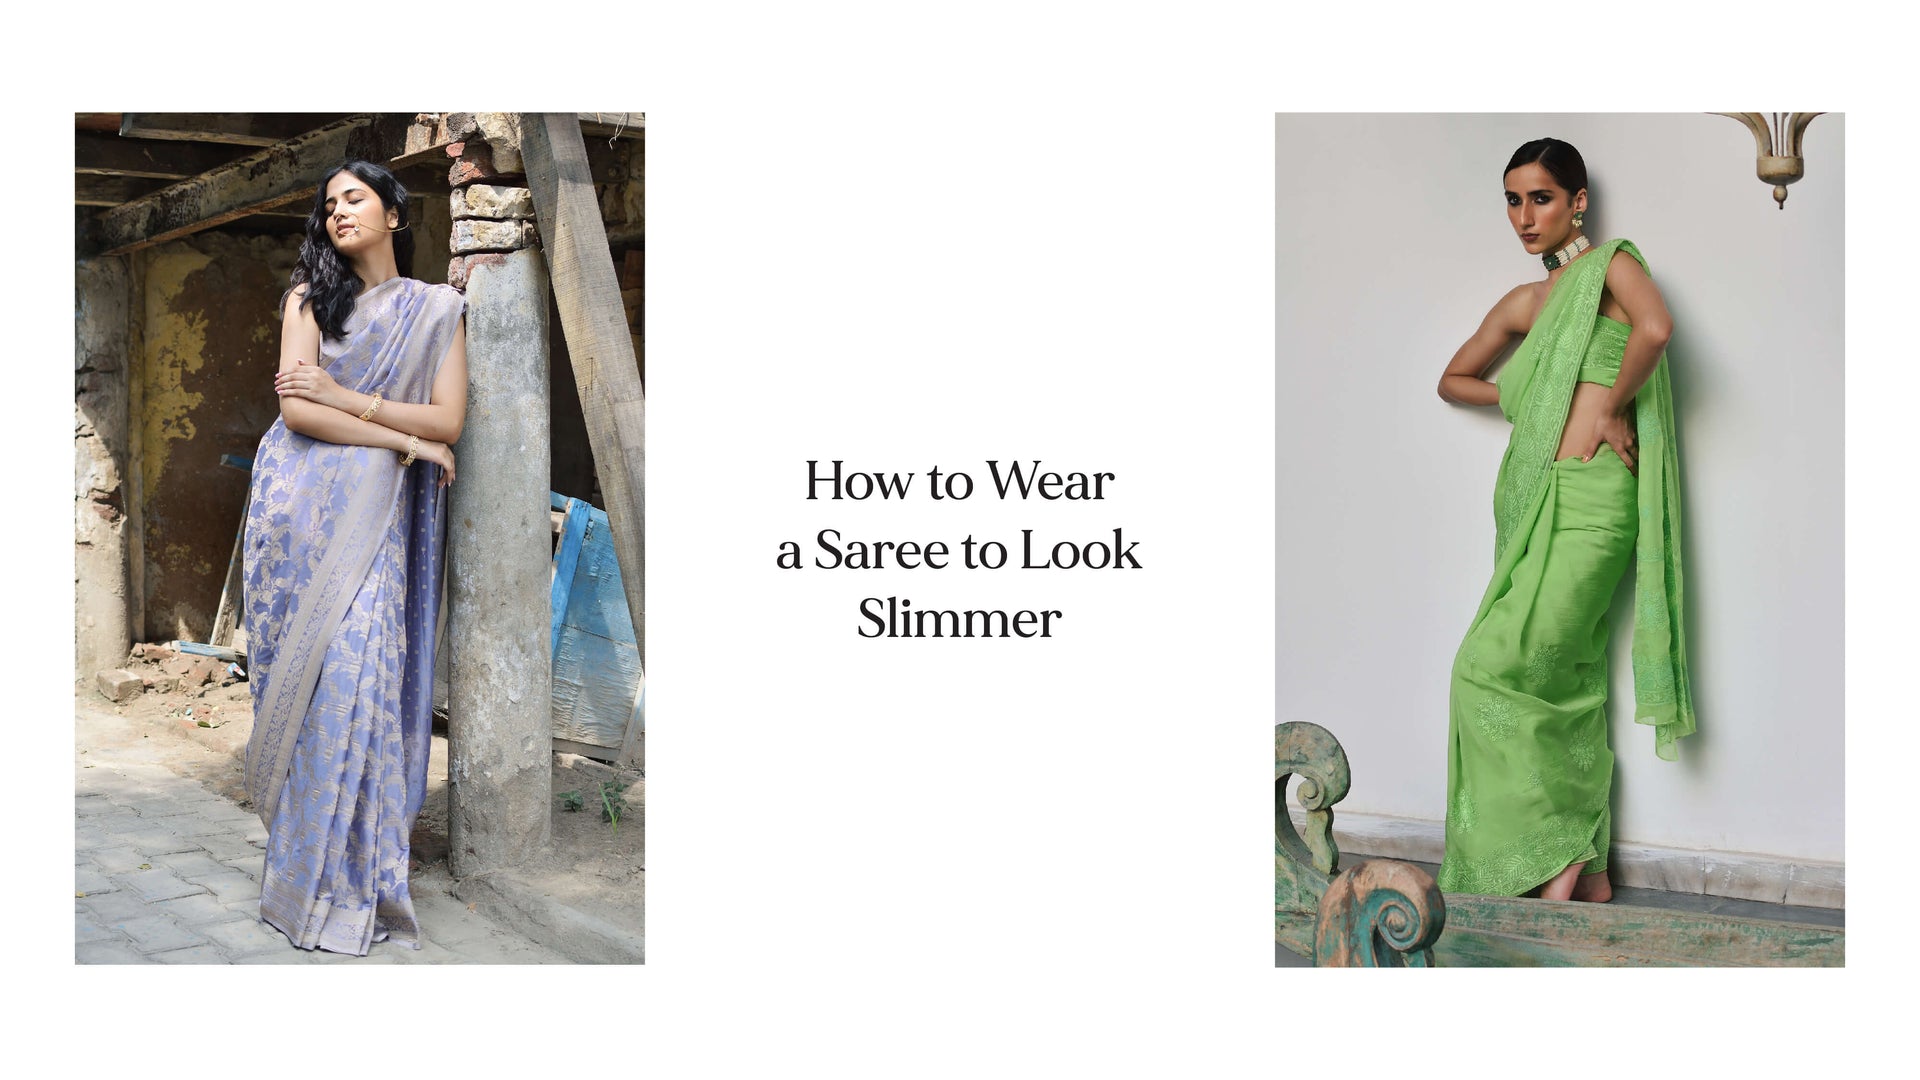 How to look slim in sari - Quora